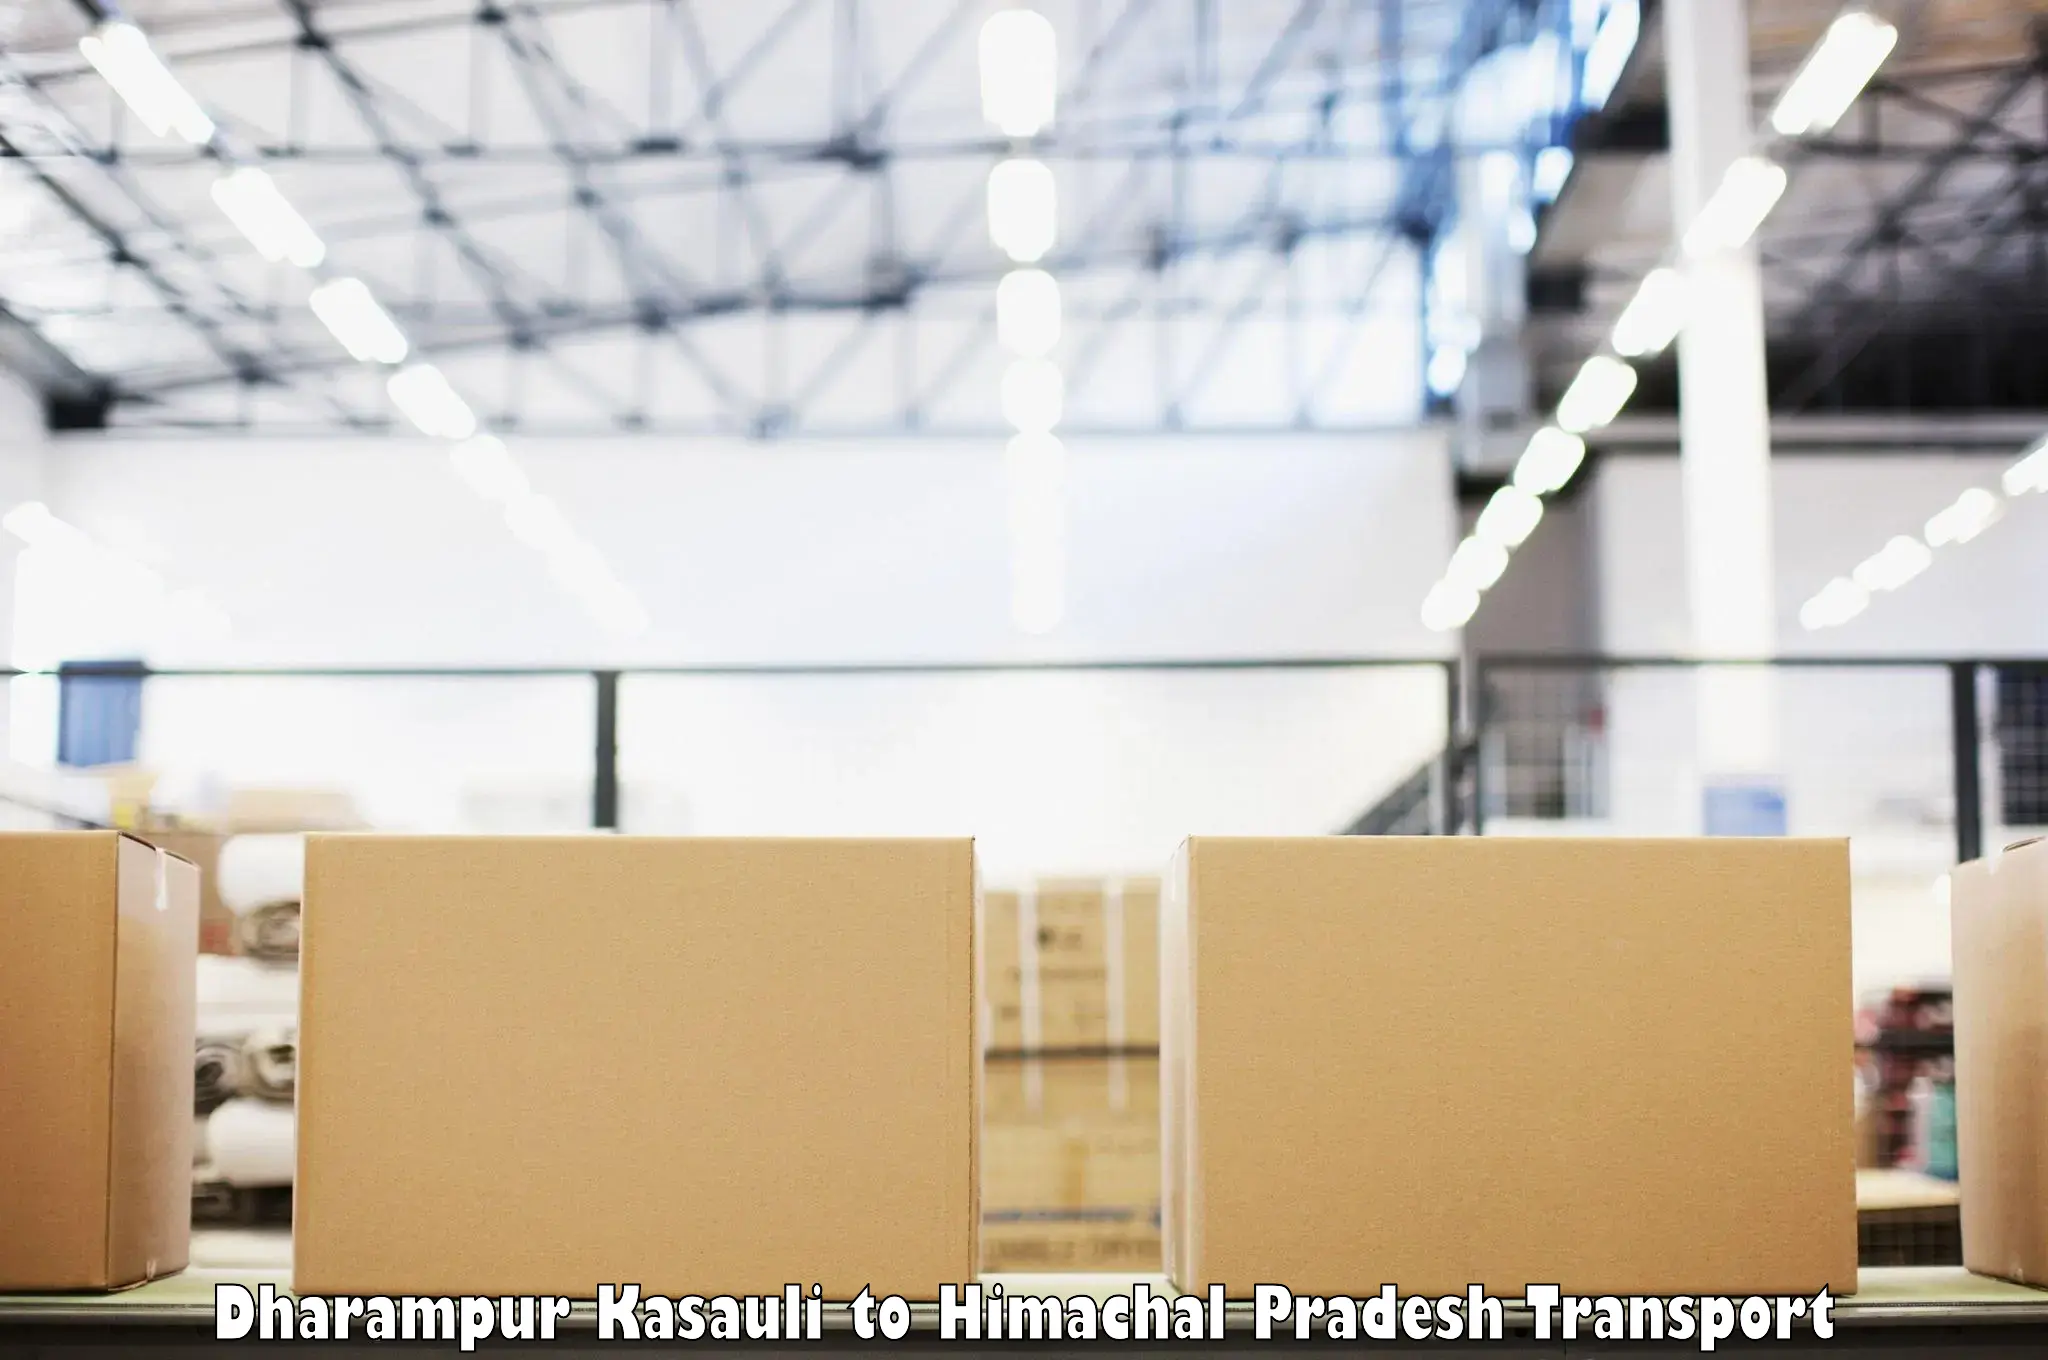 Furniture transport service Dharampur Kasauli to Nalagarh